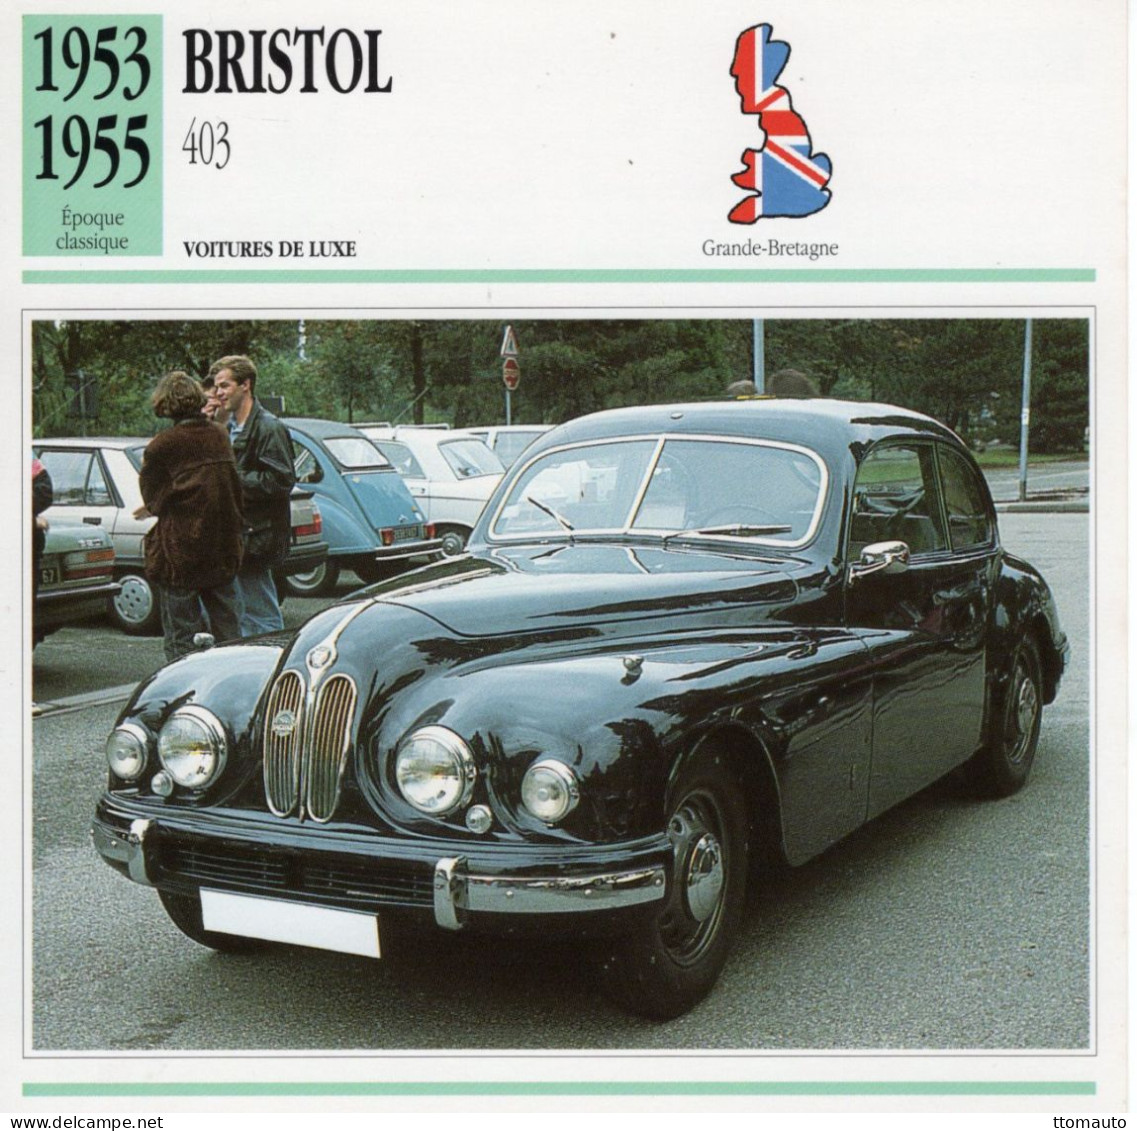 Bristol 403 -  1954 - Voiture De Luxe -  Fiche Technique Automobile (GB) - Autos